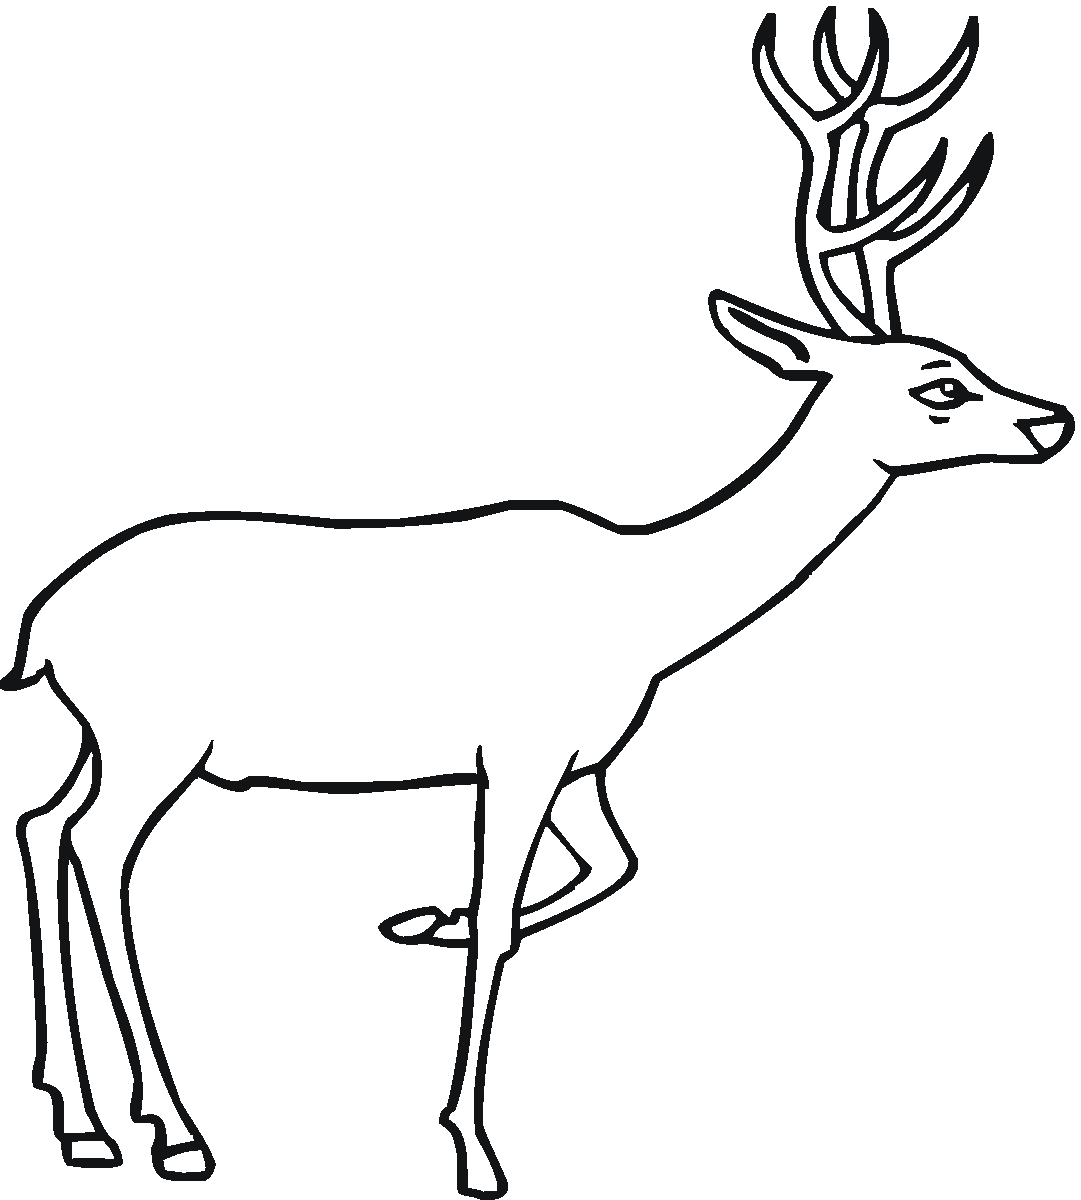 deer coloring sheet free printable deer coloring pages for kids sheet deer coloring 1 1